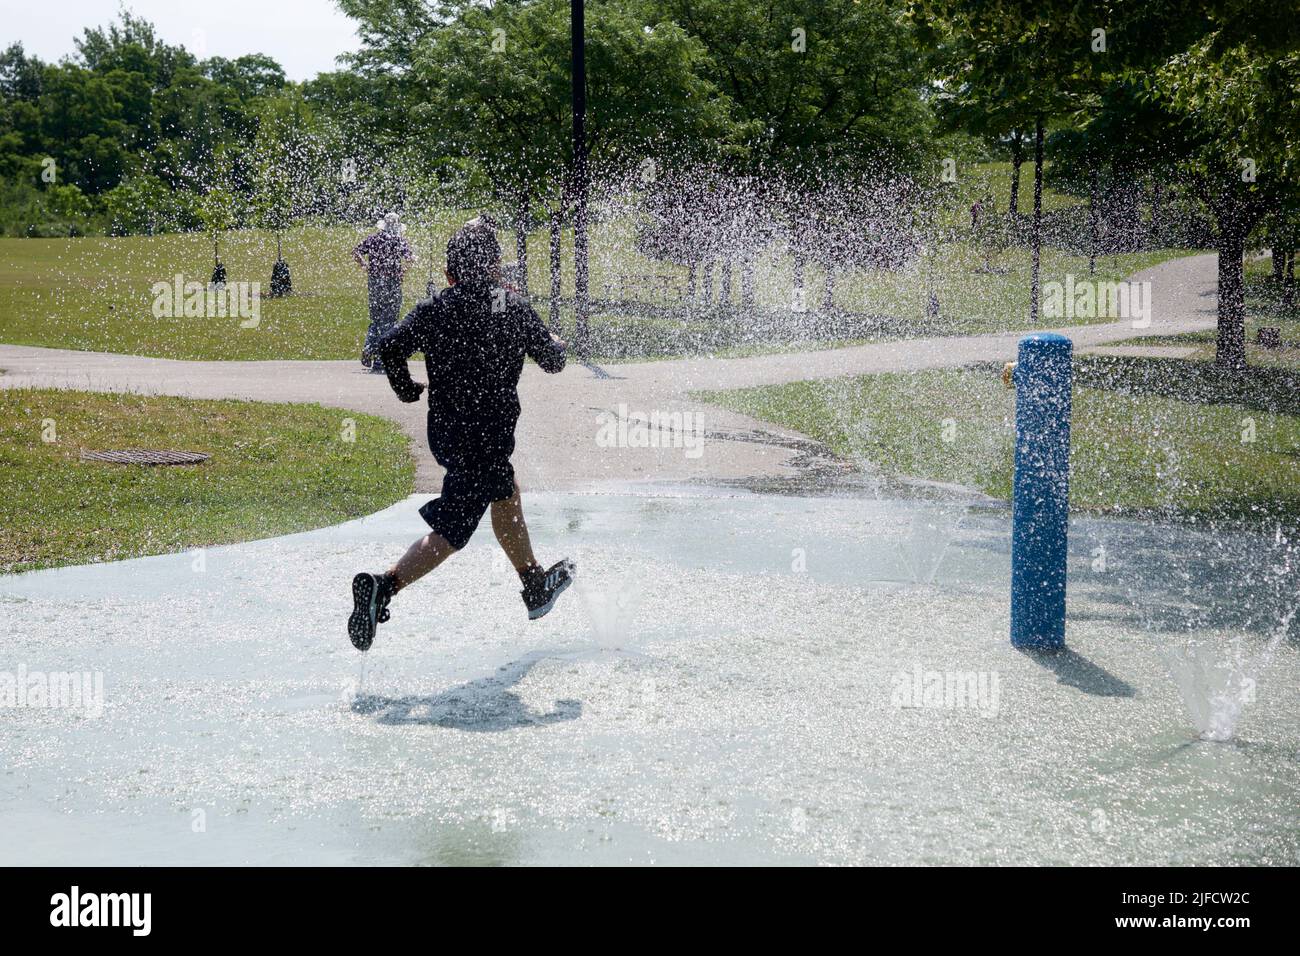 Toronto, Ontario / Canada - 06/30/2022: Junge spielen mit Wasser an einem heißen Sommertag. Junge, der zwischen dem Sprinkler läuft. Spaß im Freien. Stockfoto